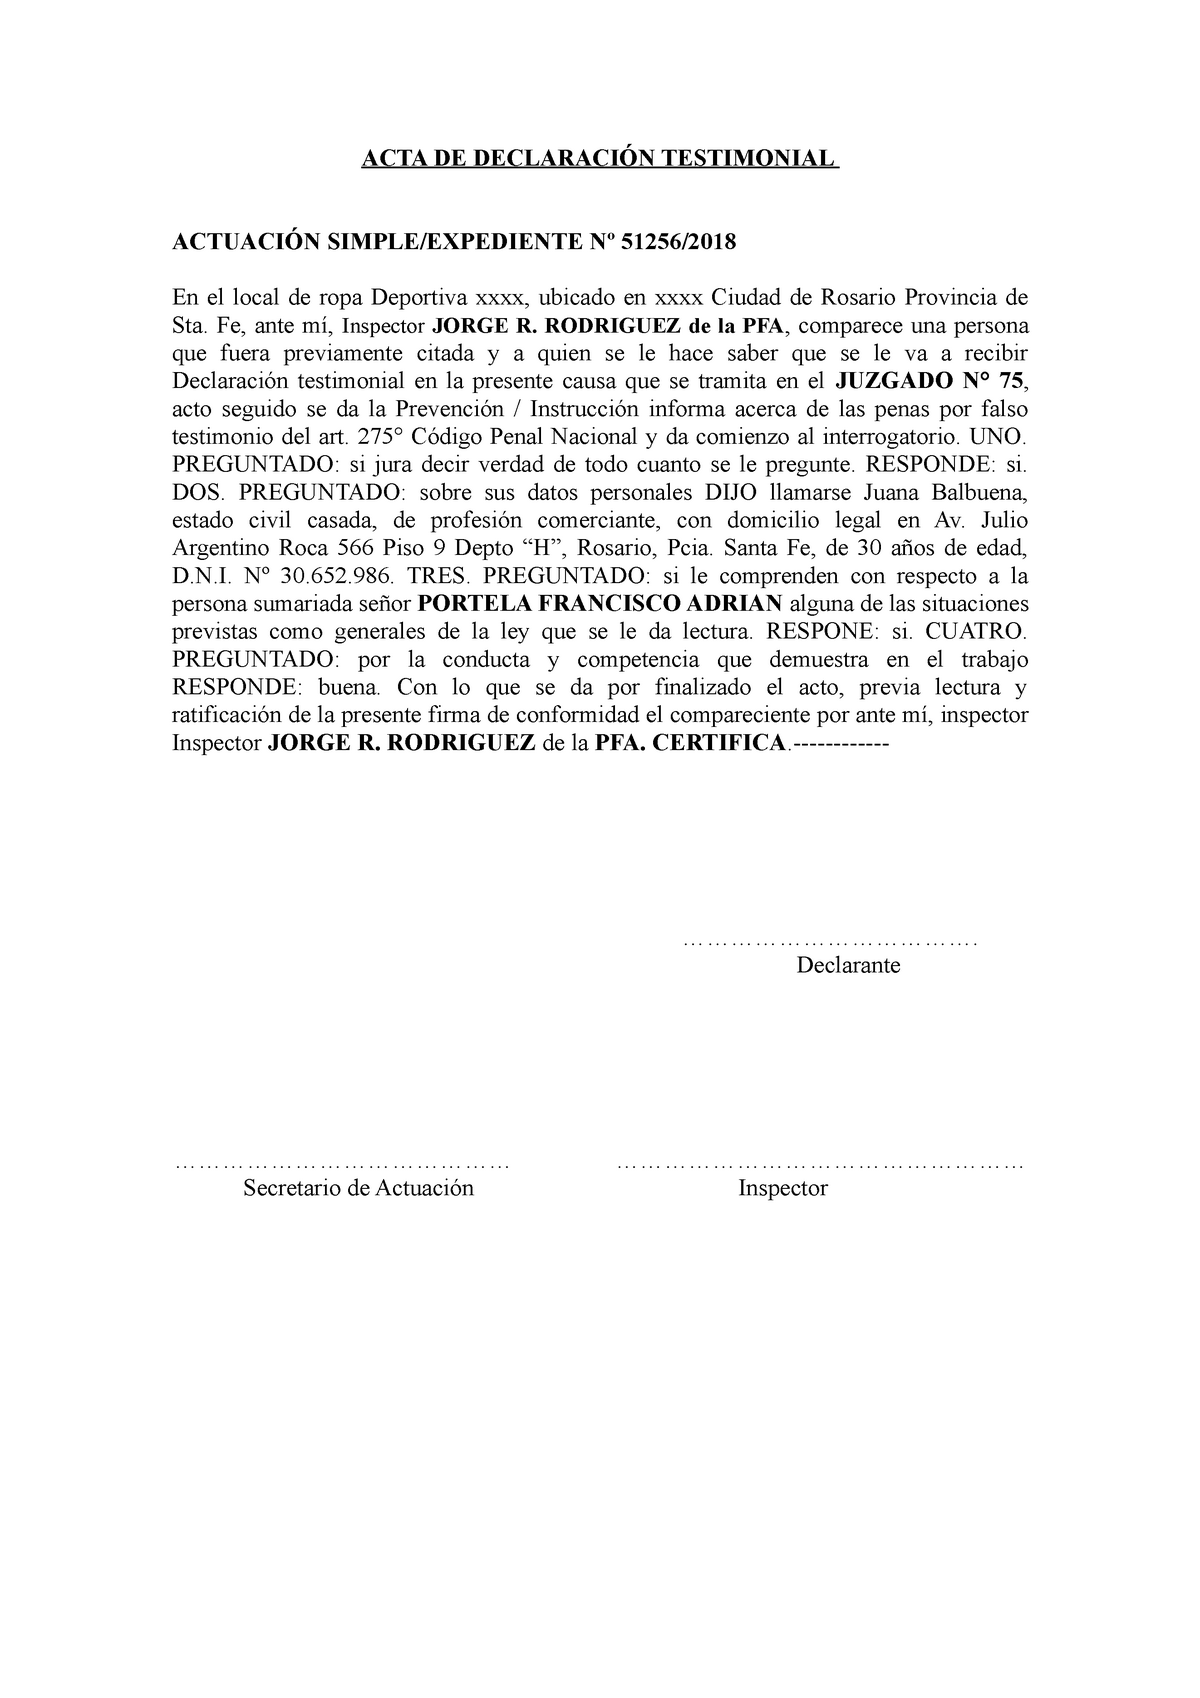 ACTA DE Declaracion Testimonial - ACTA DE DECLARACIÓN TESTIMONIAL ACTUACIÓN  SIMPLE/EXPEDIENTE Nº - Studocu